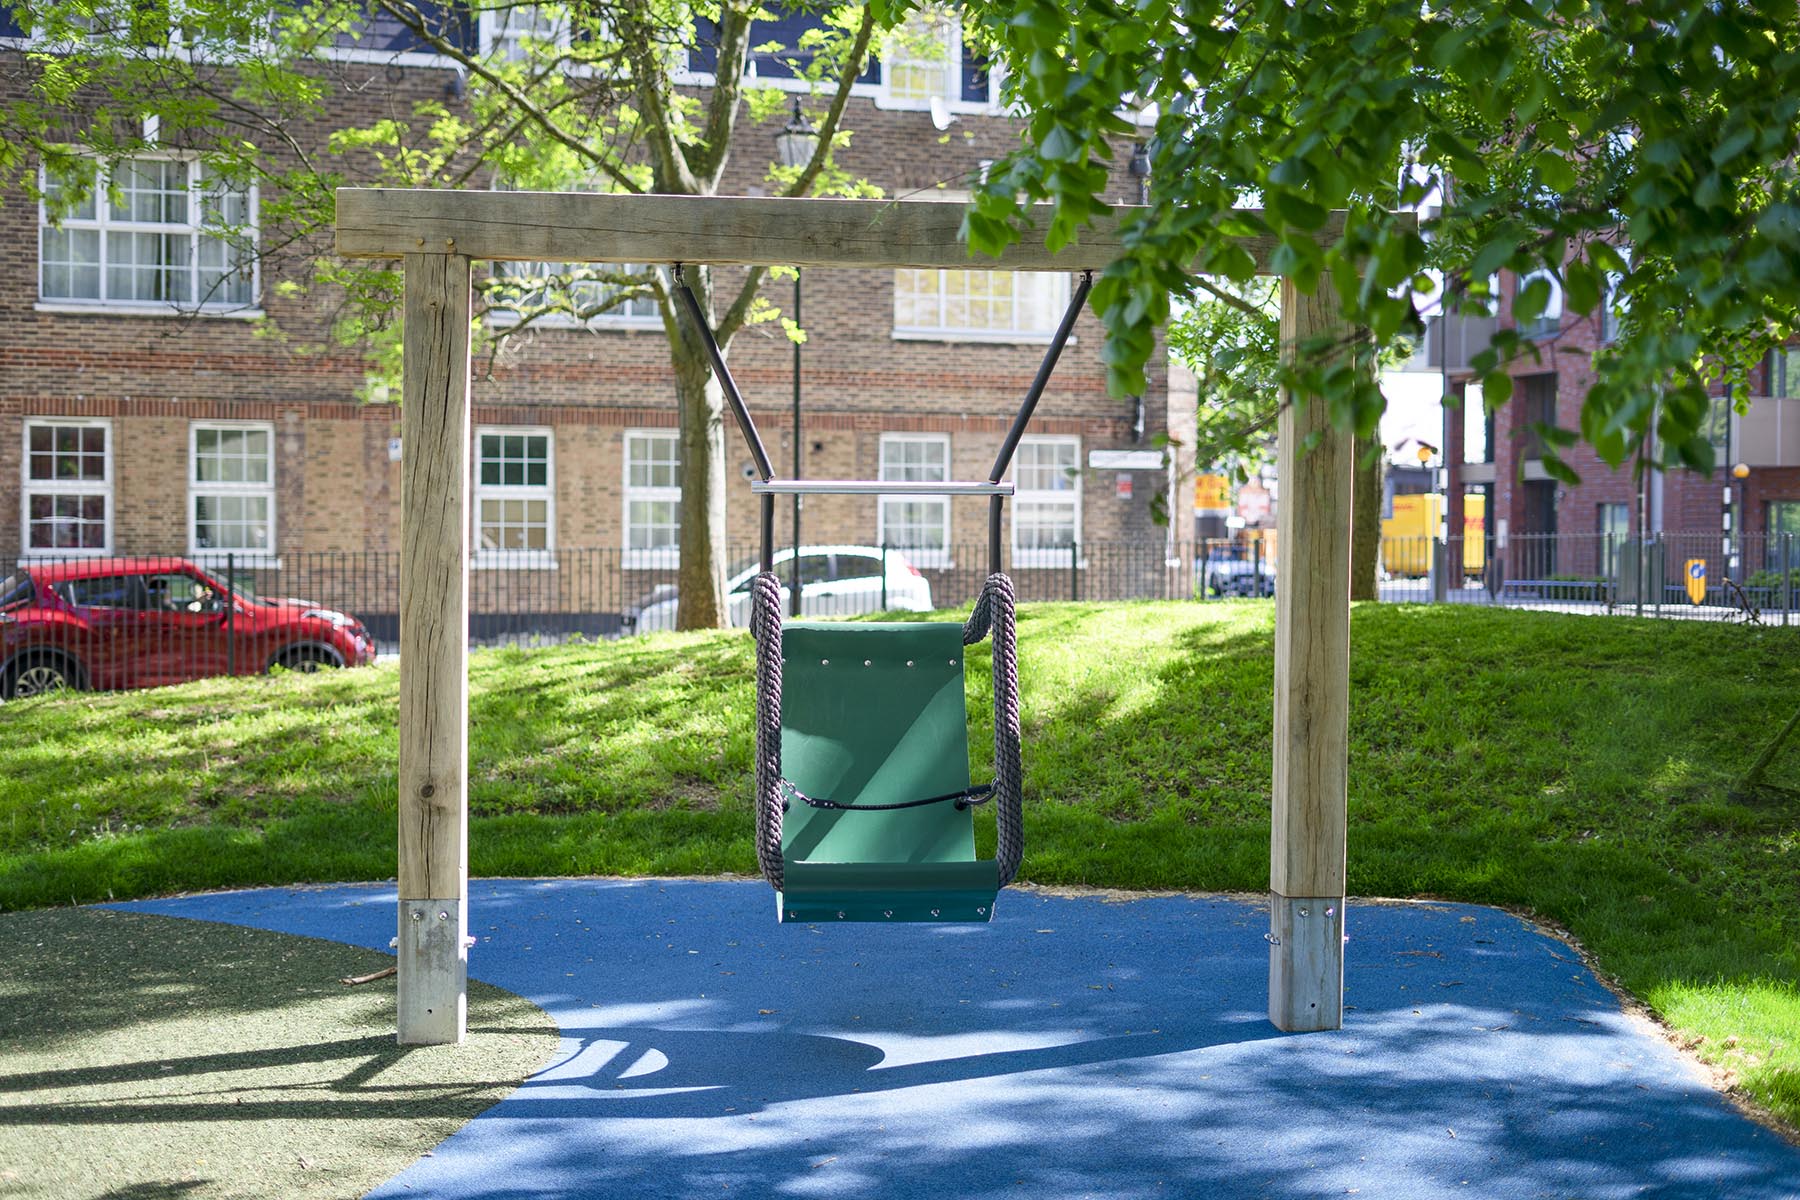 bespoke playground equipment burgess park